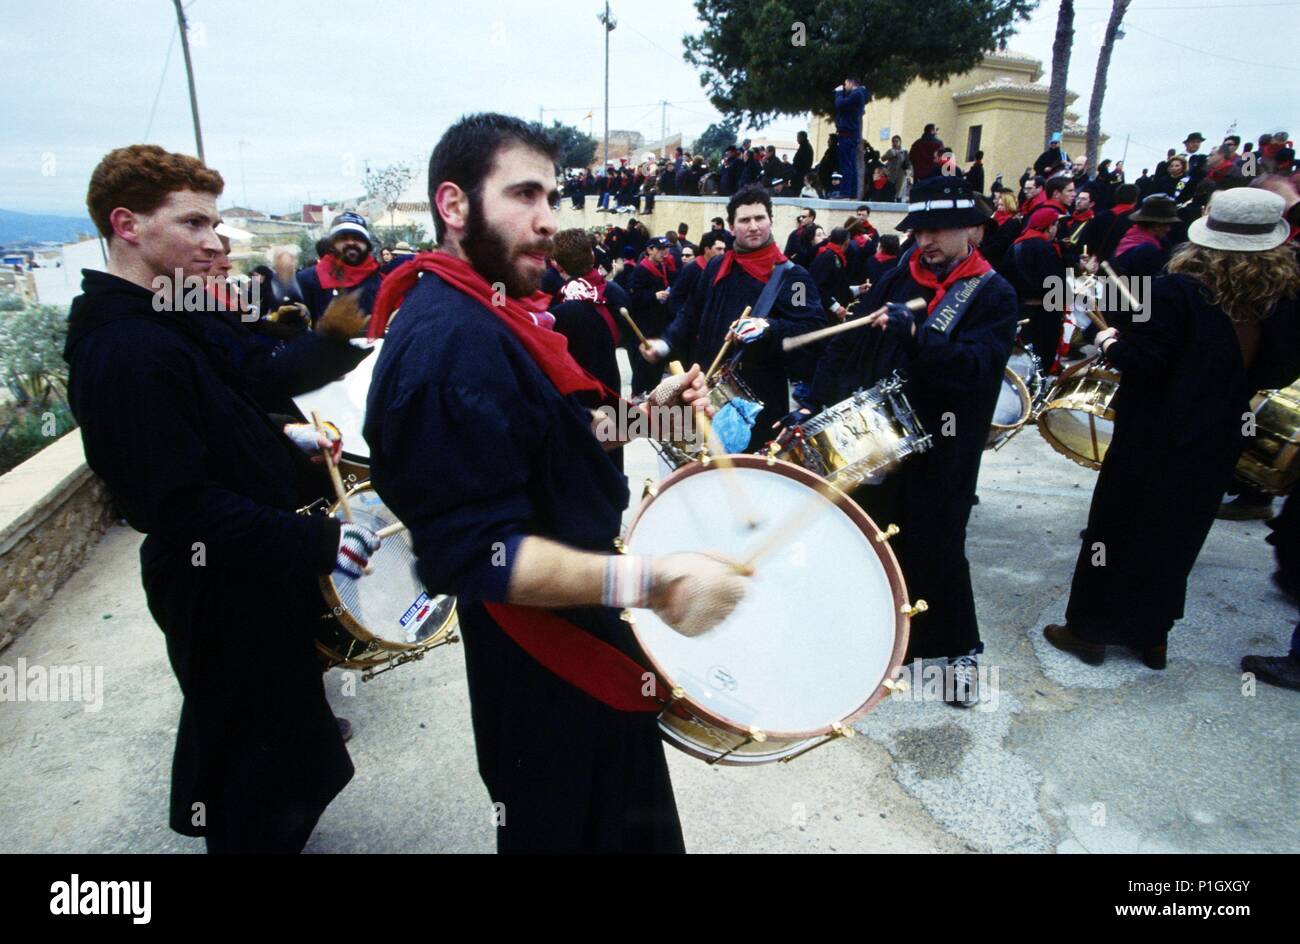 Hellín; 'tamborada' (big drum procession) at the Holy Week / Semana Santa. Stock Photo